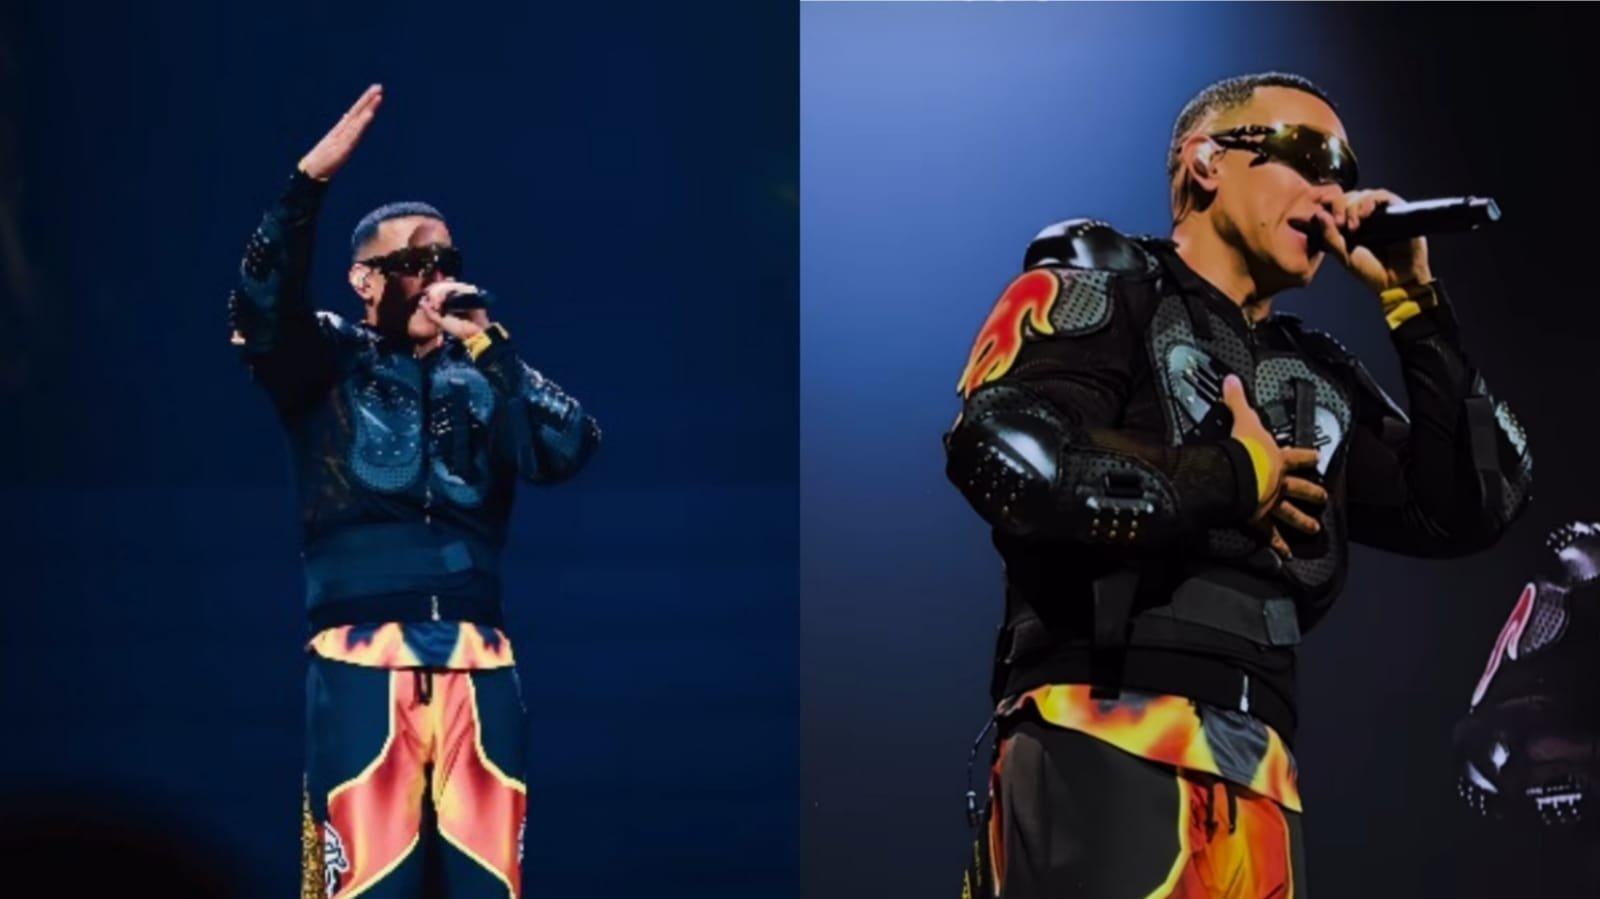 Daddy Yankee, cantor de “Despacito” e “Gasolina”, anuncia conversão: “Viverei para Cristo”